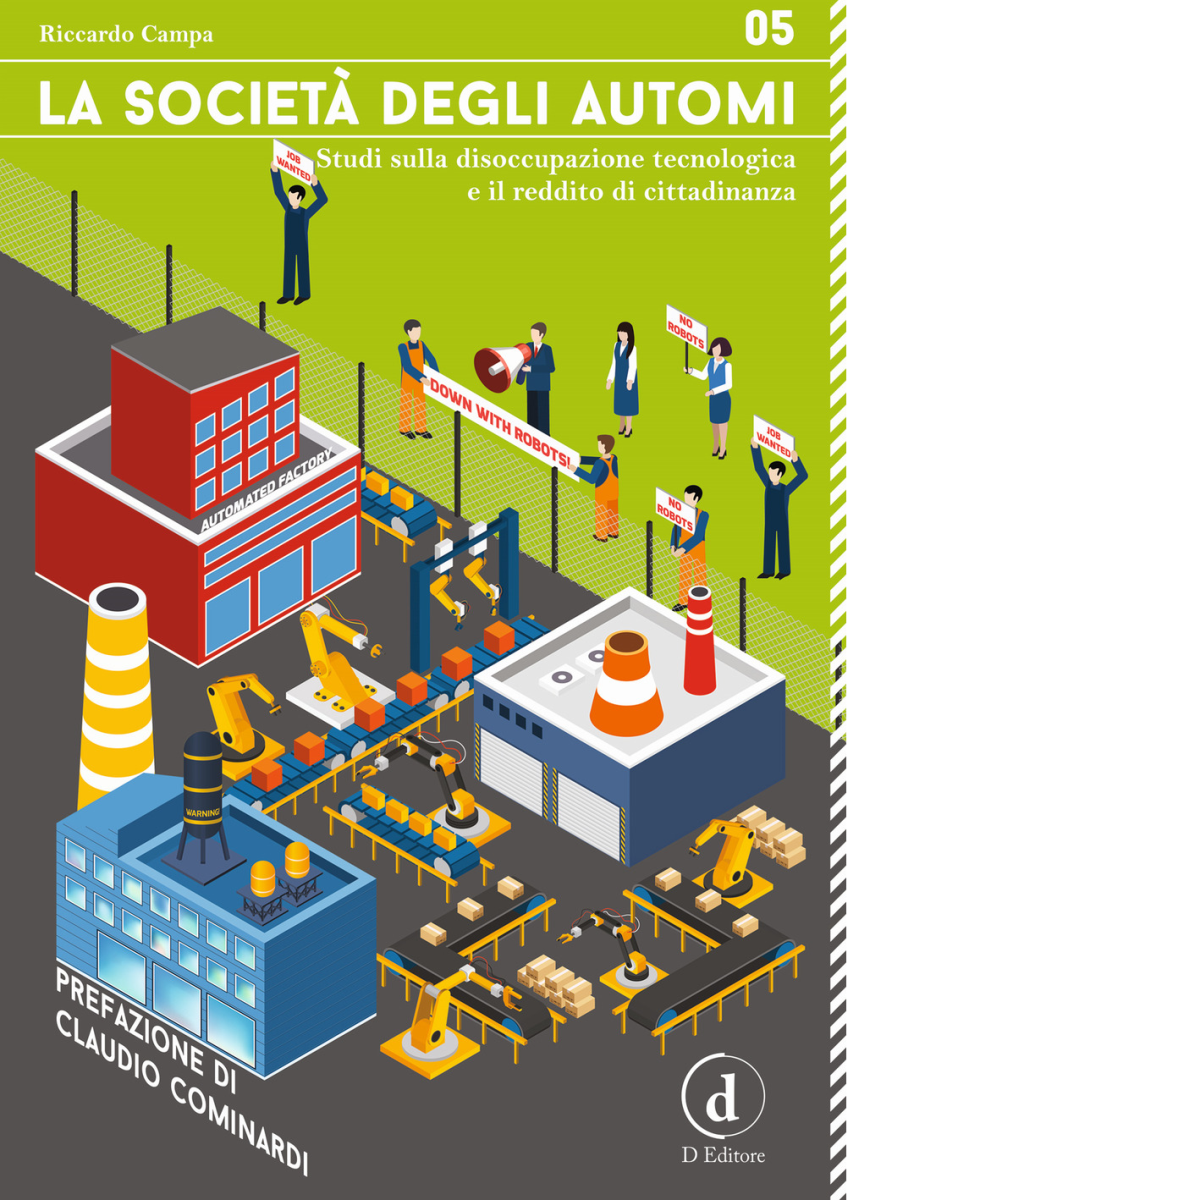 La societ? degli automi - Riccardo Campa - D Editore, 2017